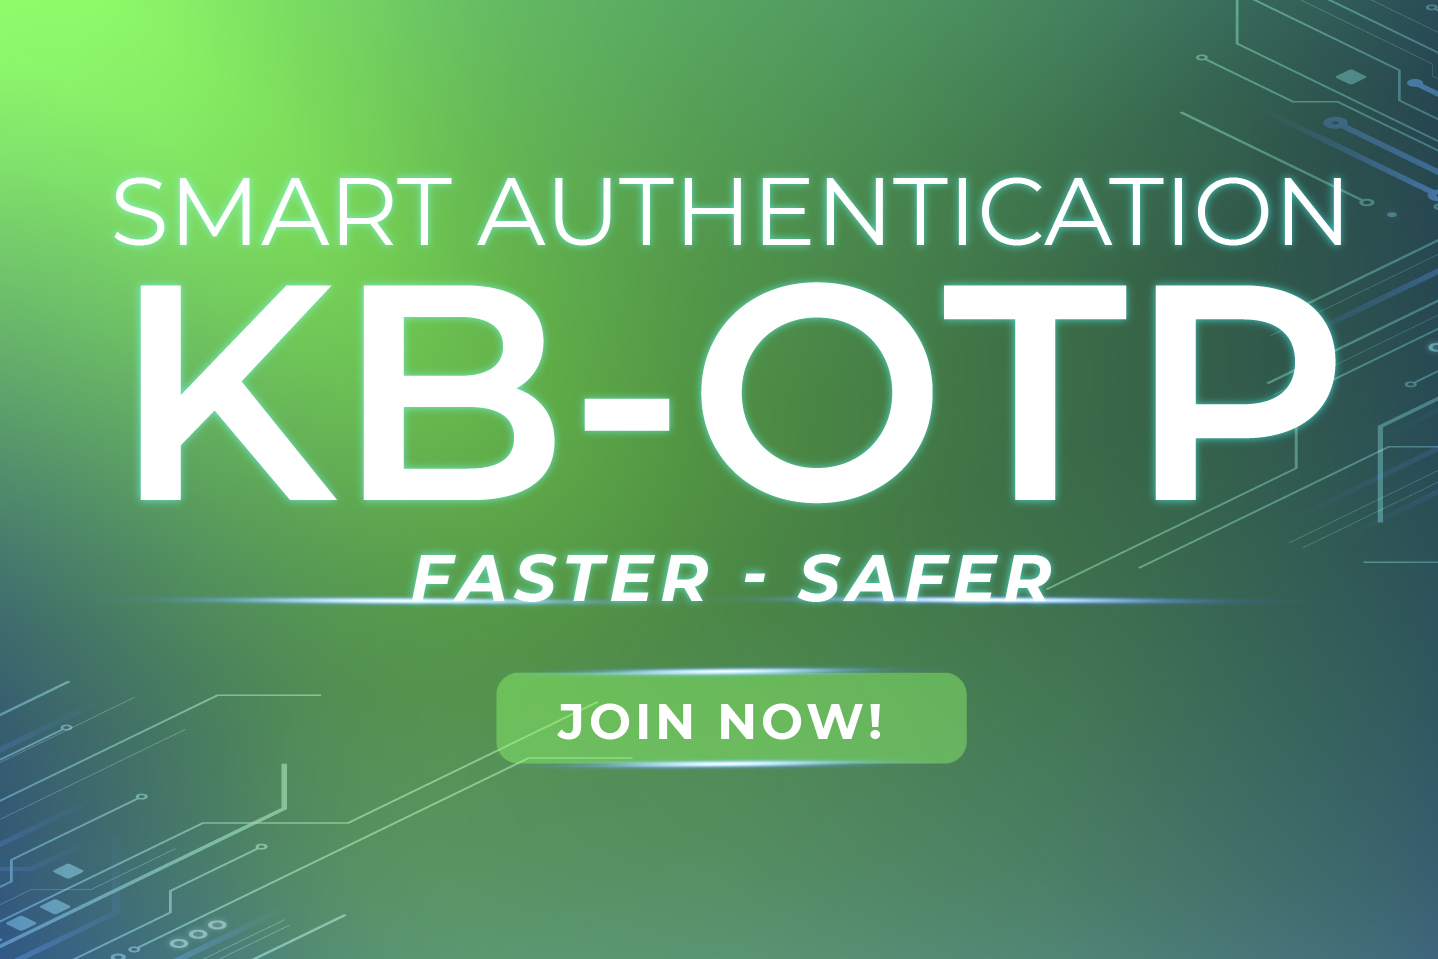 KB-OTP Smart Authentication